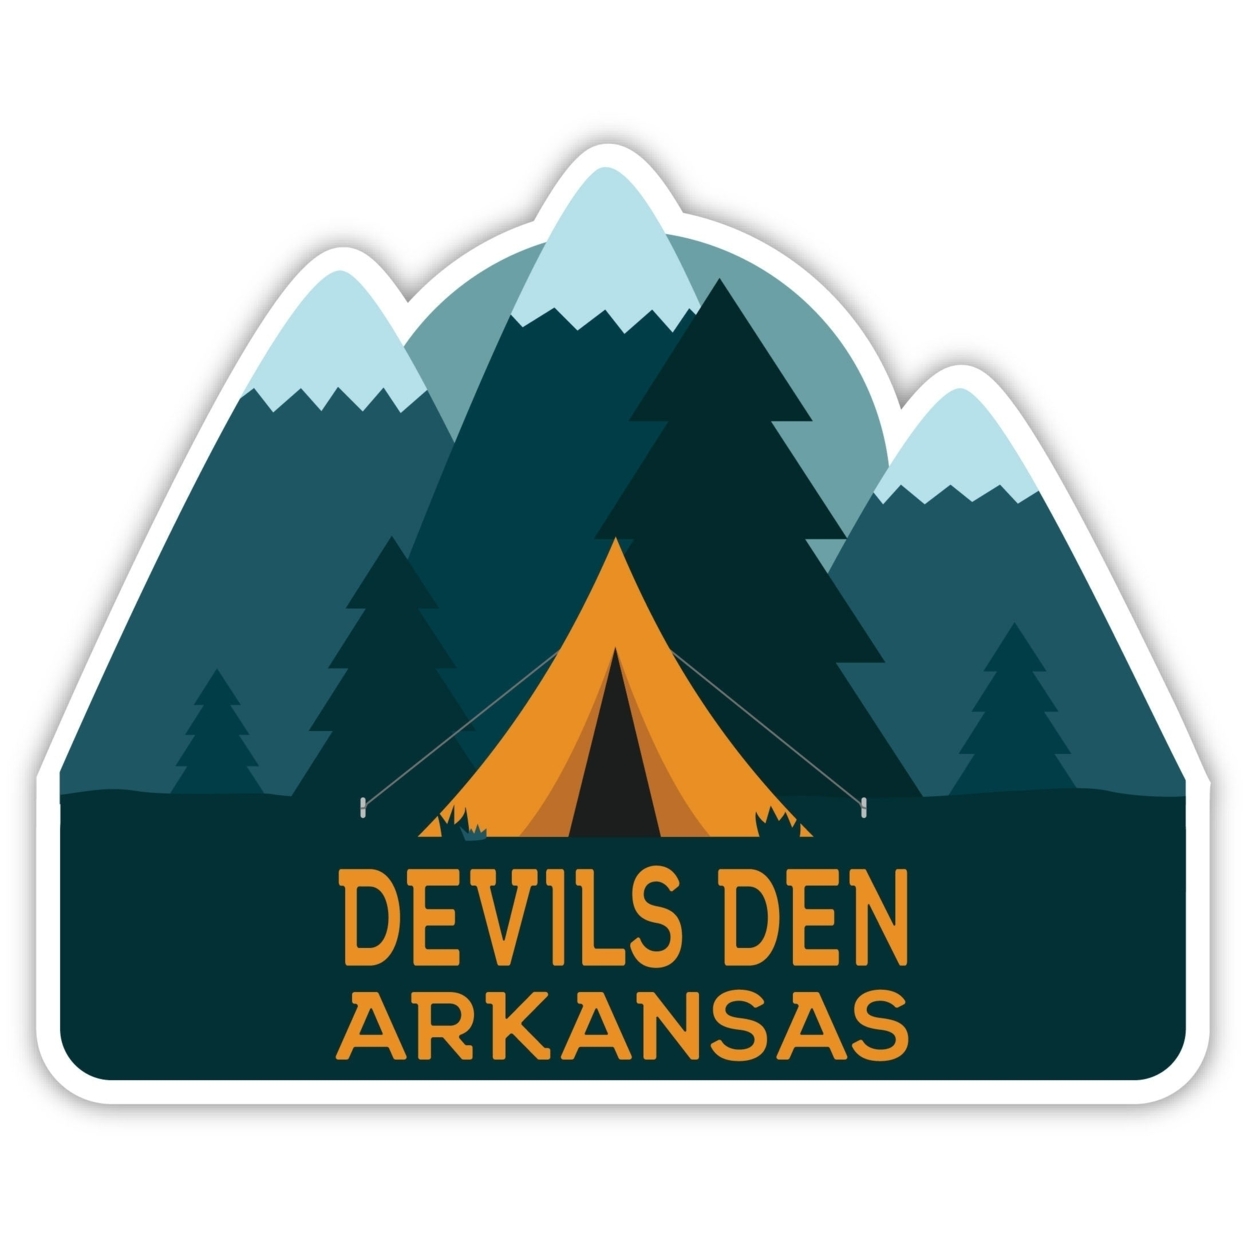 Devils Den Arkansas Souvenir Decorative Stickers (Choose Theme And Size) - Single Unit, 2-Inch, Tent